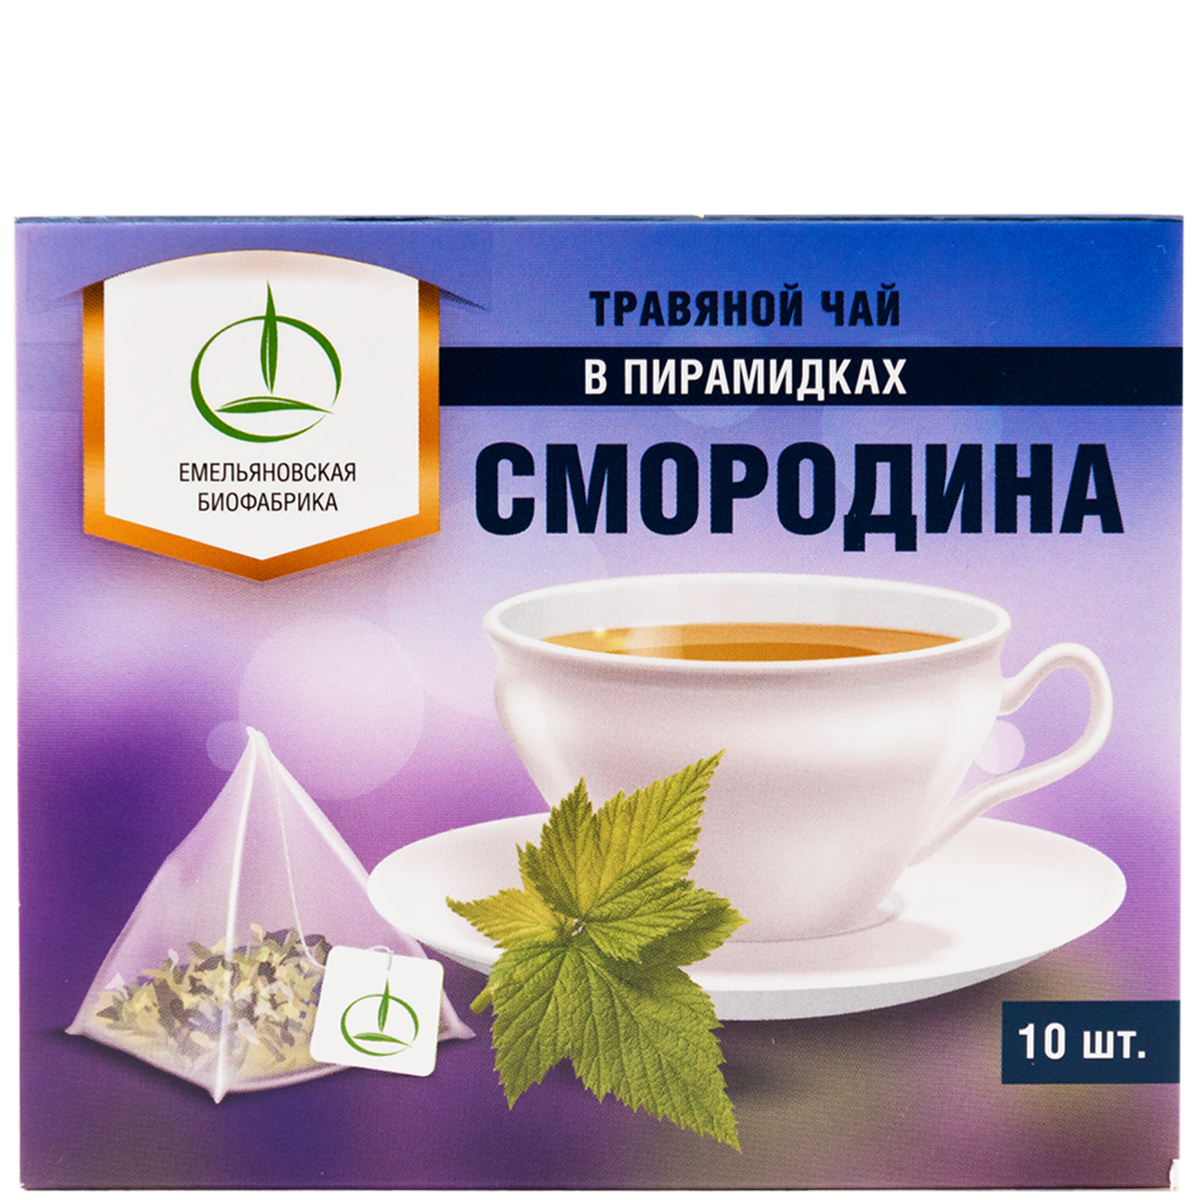 Чай Емельяновская Биофабрика Смородина лист в пирамидках 20 г - фото 5